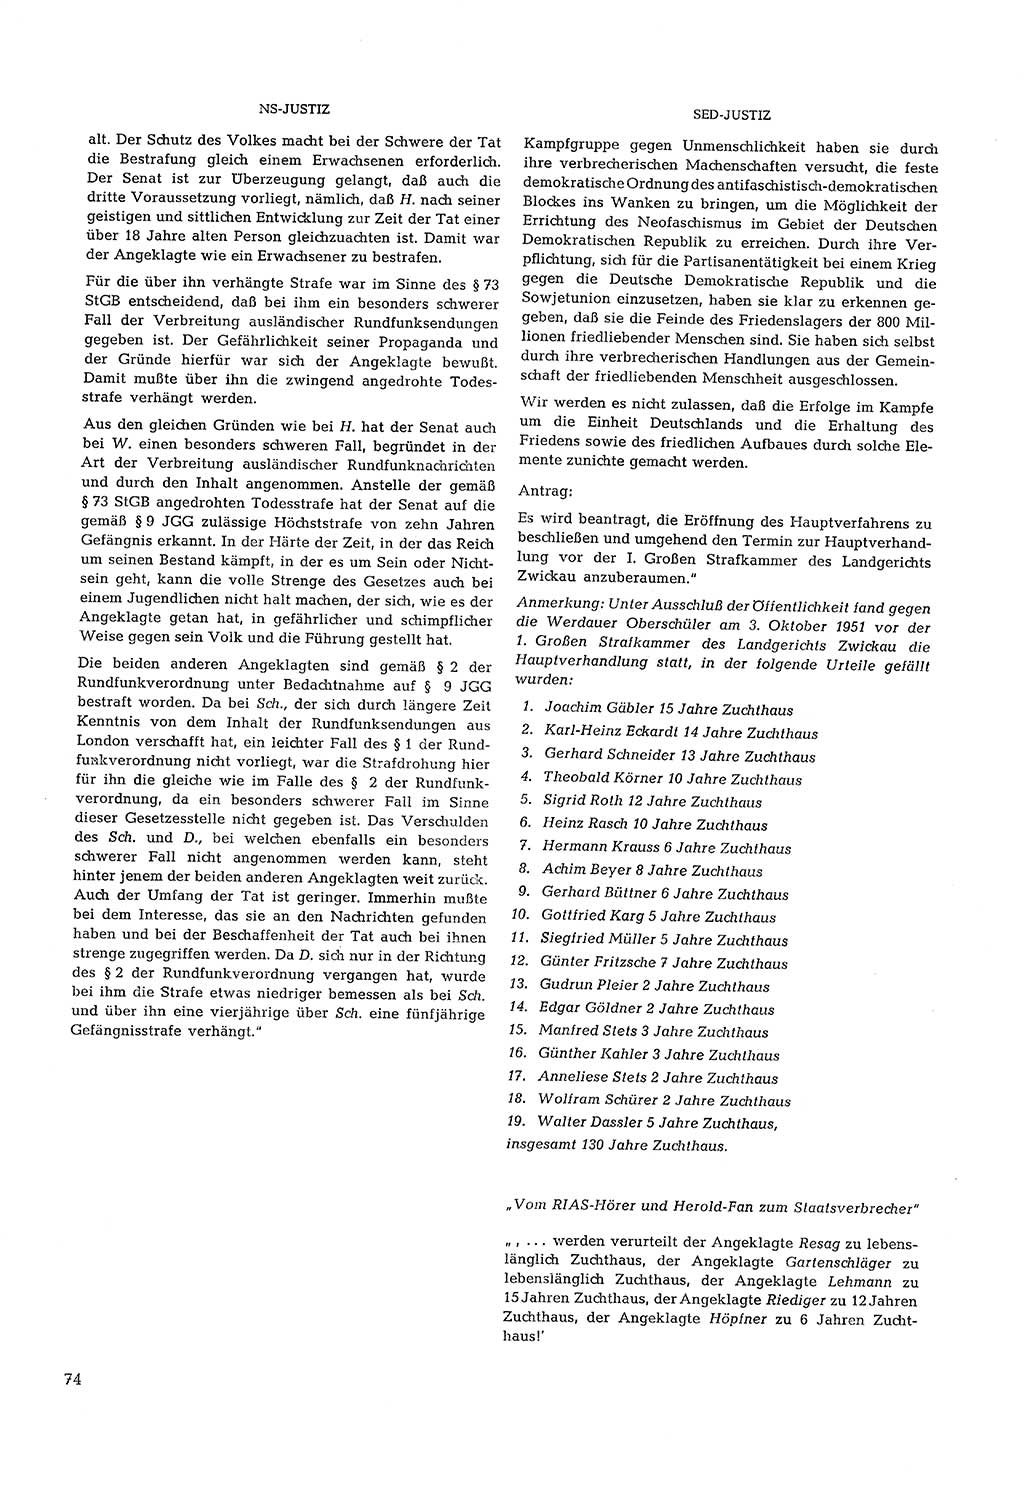 Partei-Justiz, Dokumentation über den nationalsozialistischen und kommunistischen Rechtsmißbrauch in Deutschland 1933-1963, Seite 74 (Part.-Just. Dtl. natsoz. komm. 1933-1963, S. 74)